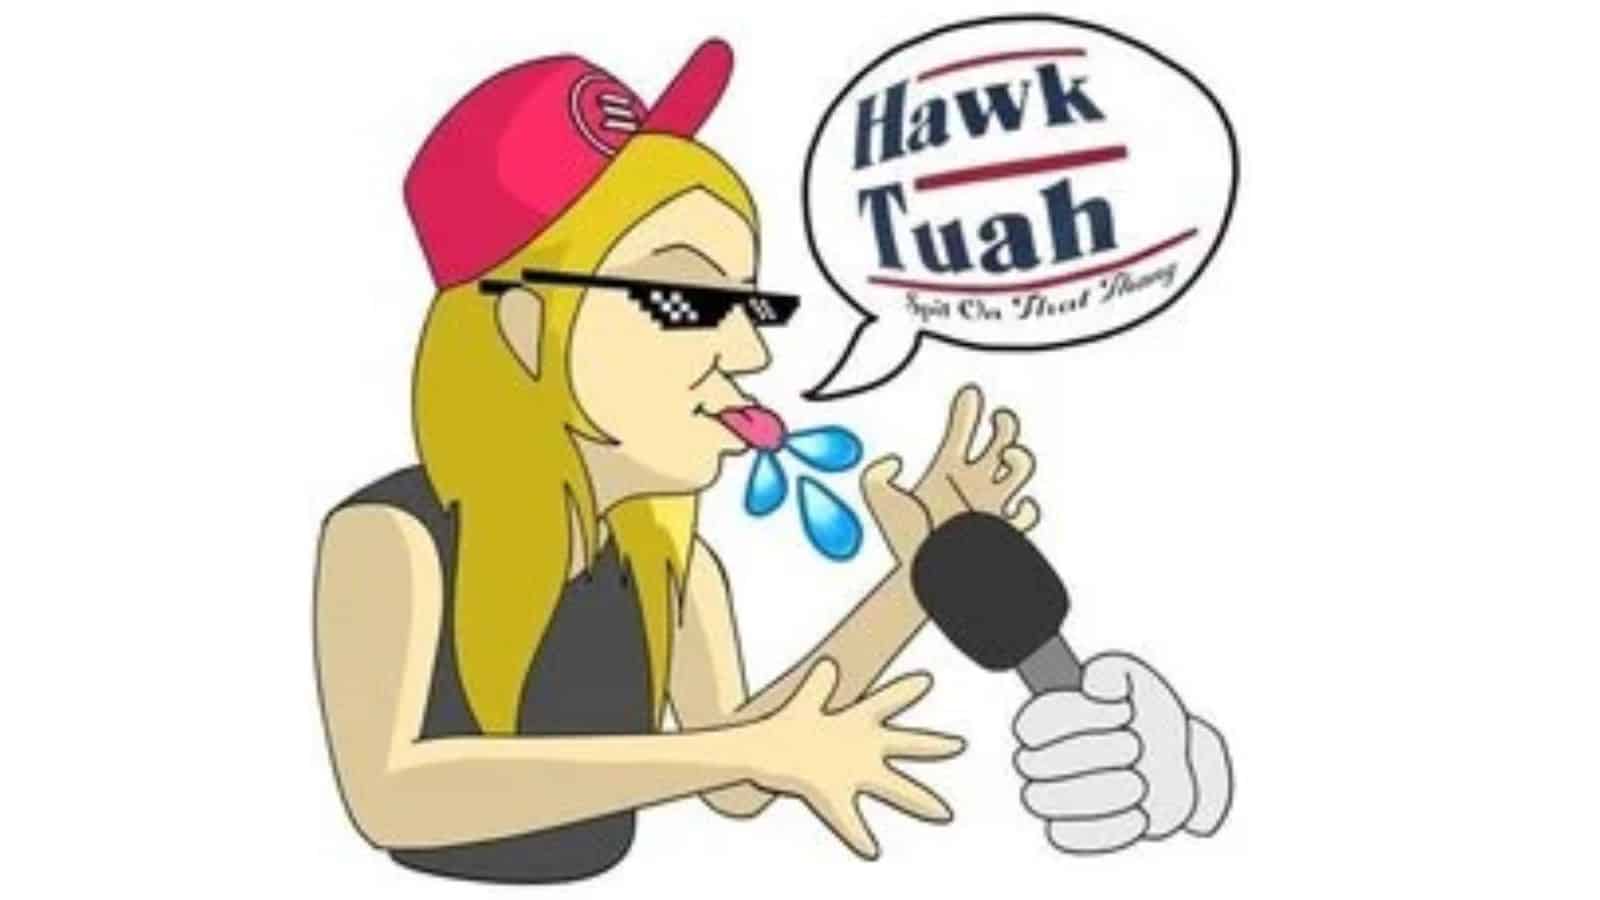 Predicción del precio de Hawk Tuah: HAWKTUAH sube un 19%, pero los inversores acuden en masa a este PEPE de capa 2 para obtener ganancias parabólicas